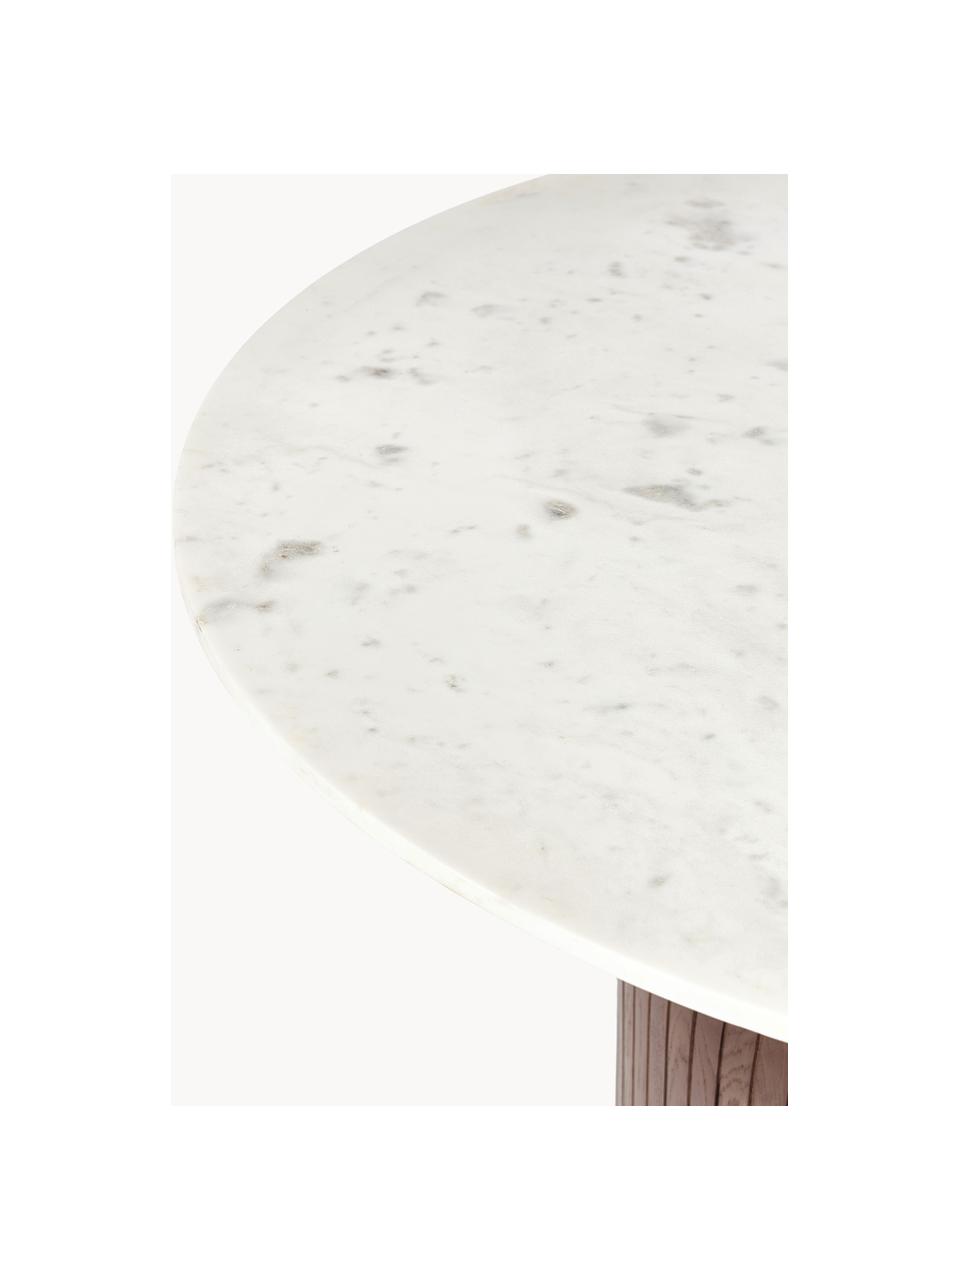 Runder Esstisch Nelly mit Marmor-Tischplatte, Ø 115 cm, Tischplatte: Marmor, Weiss, marmoriert, dunkles Mangoholz, Ø 115 cm